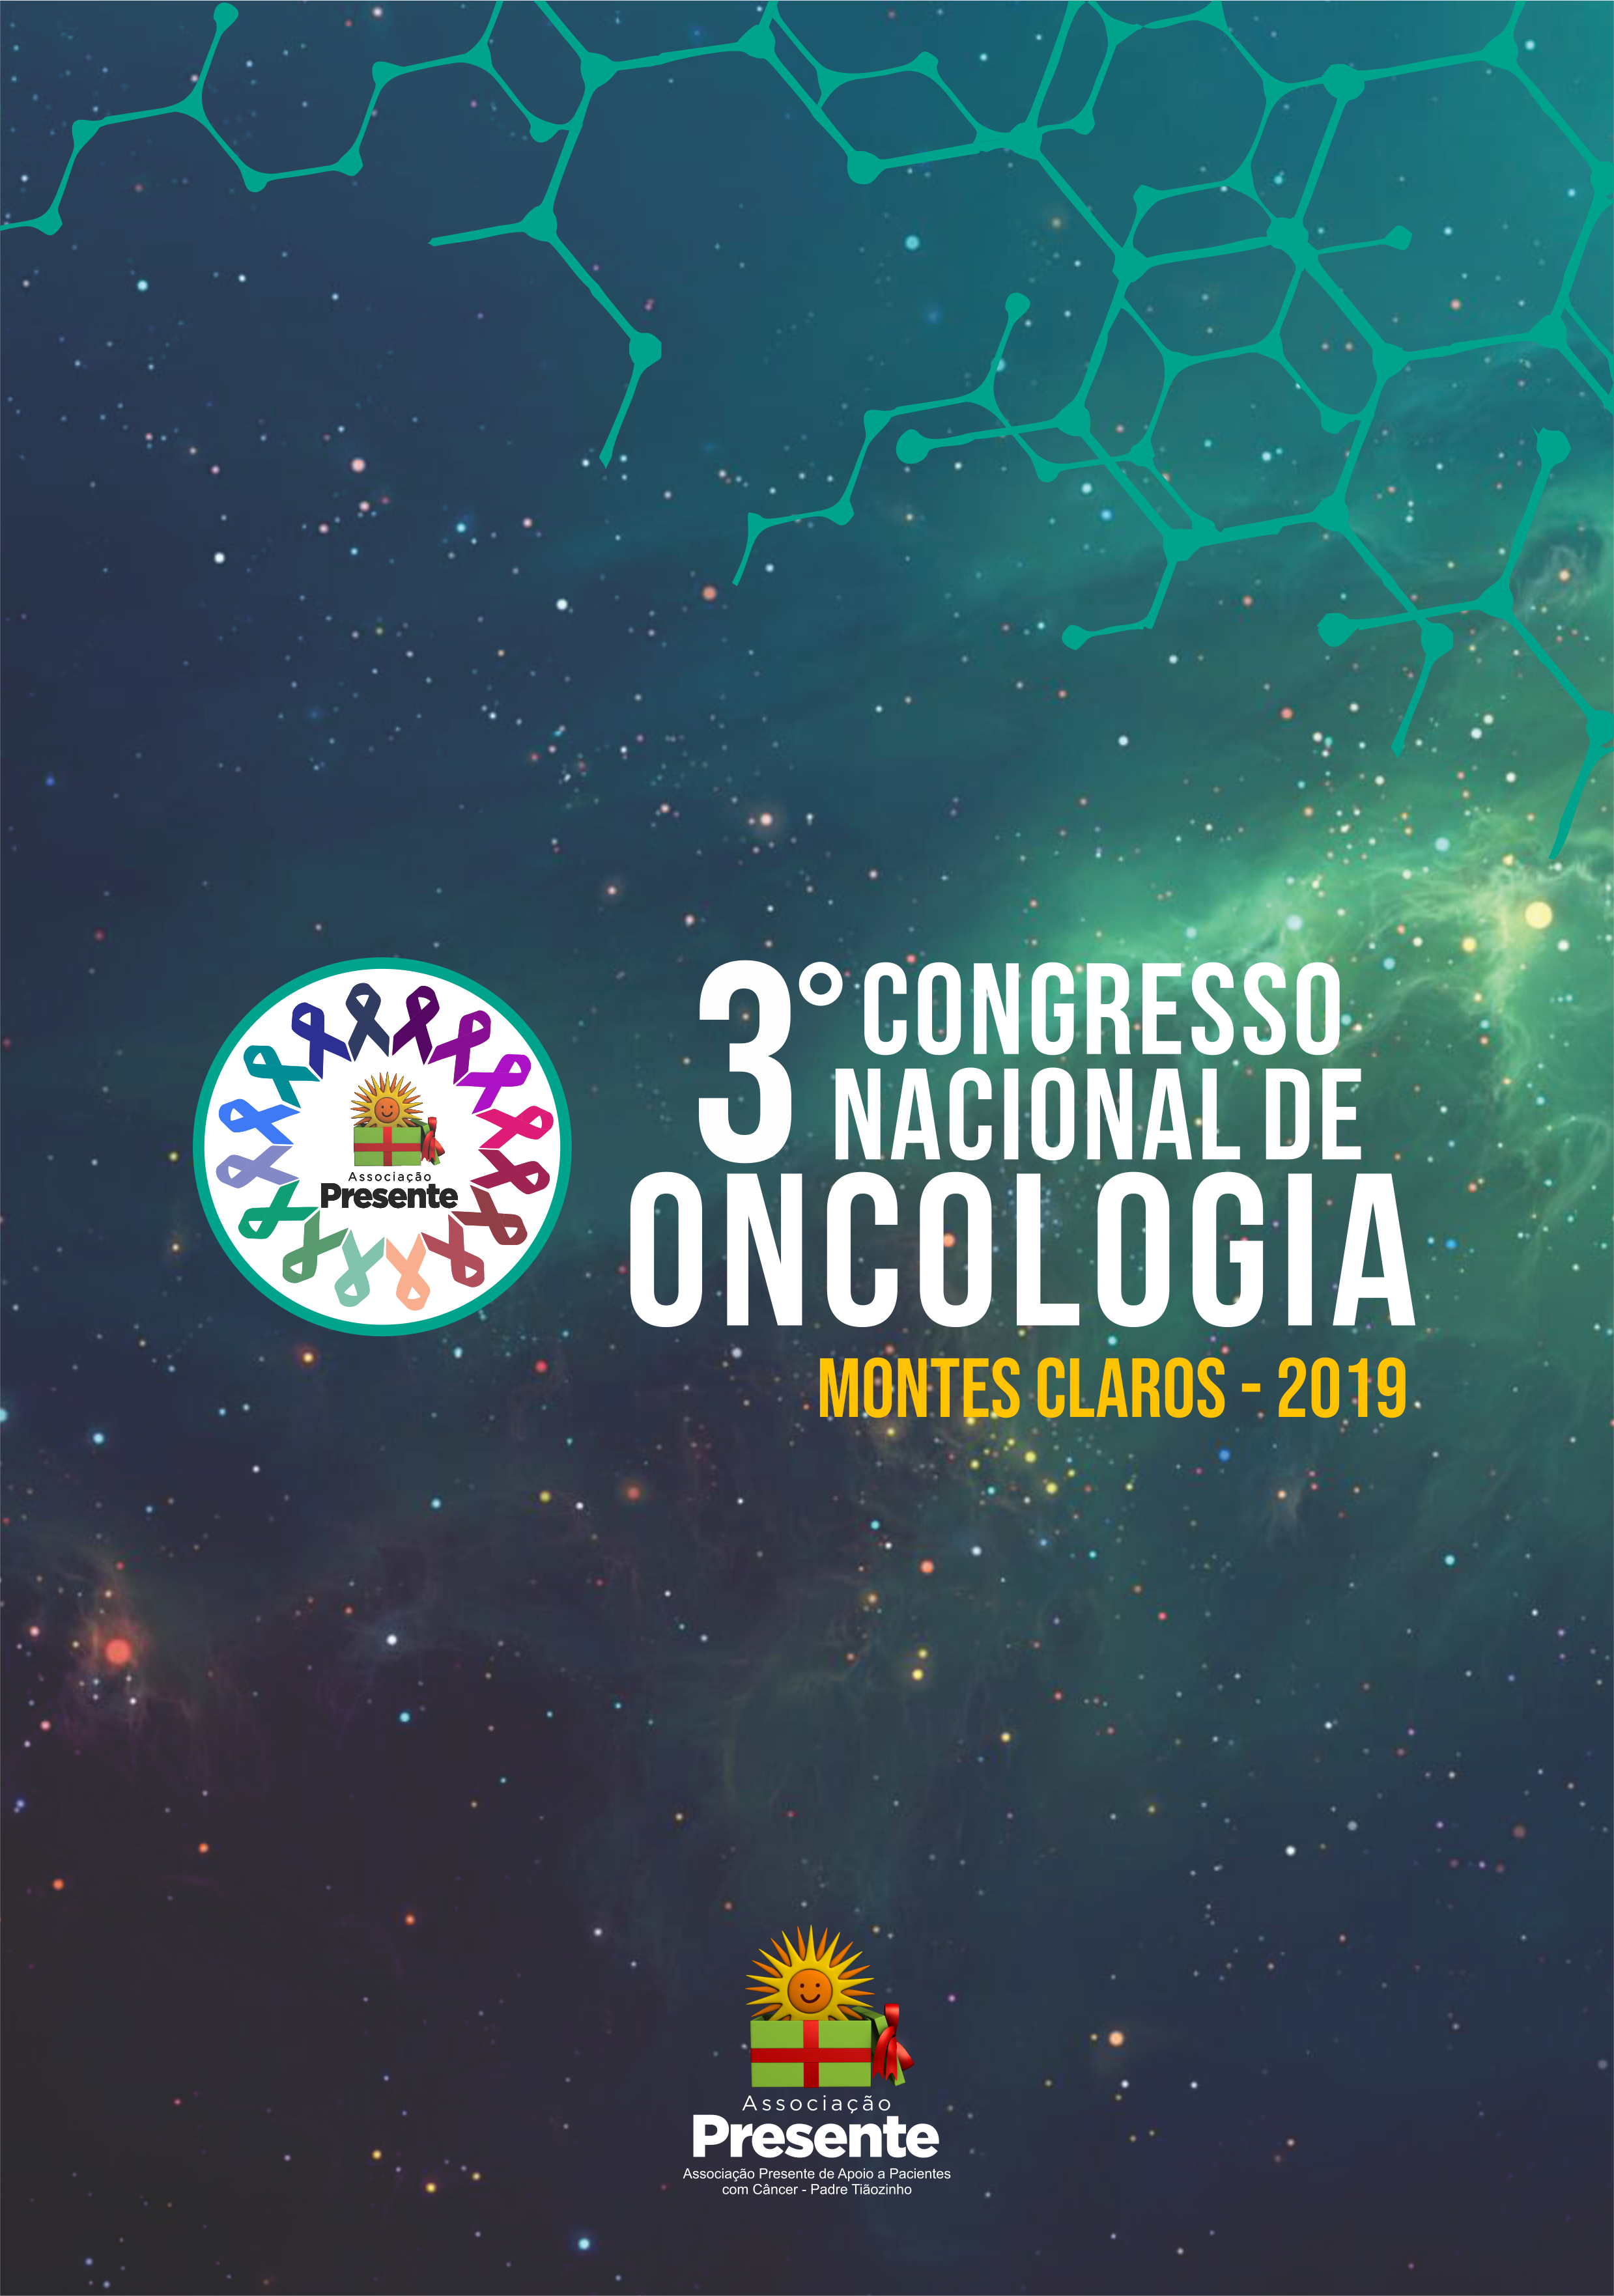 					Visualizar 2019: III Congresso Nacional de Oncologia da Associação Presente
				